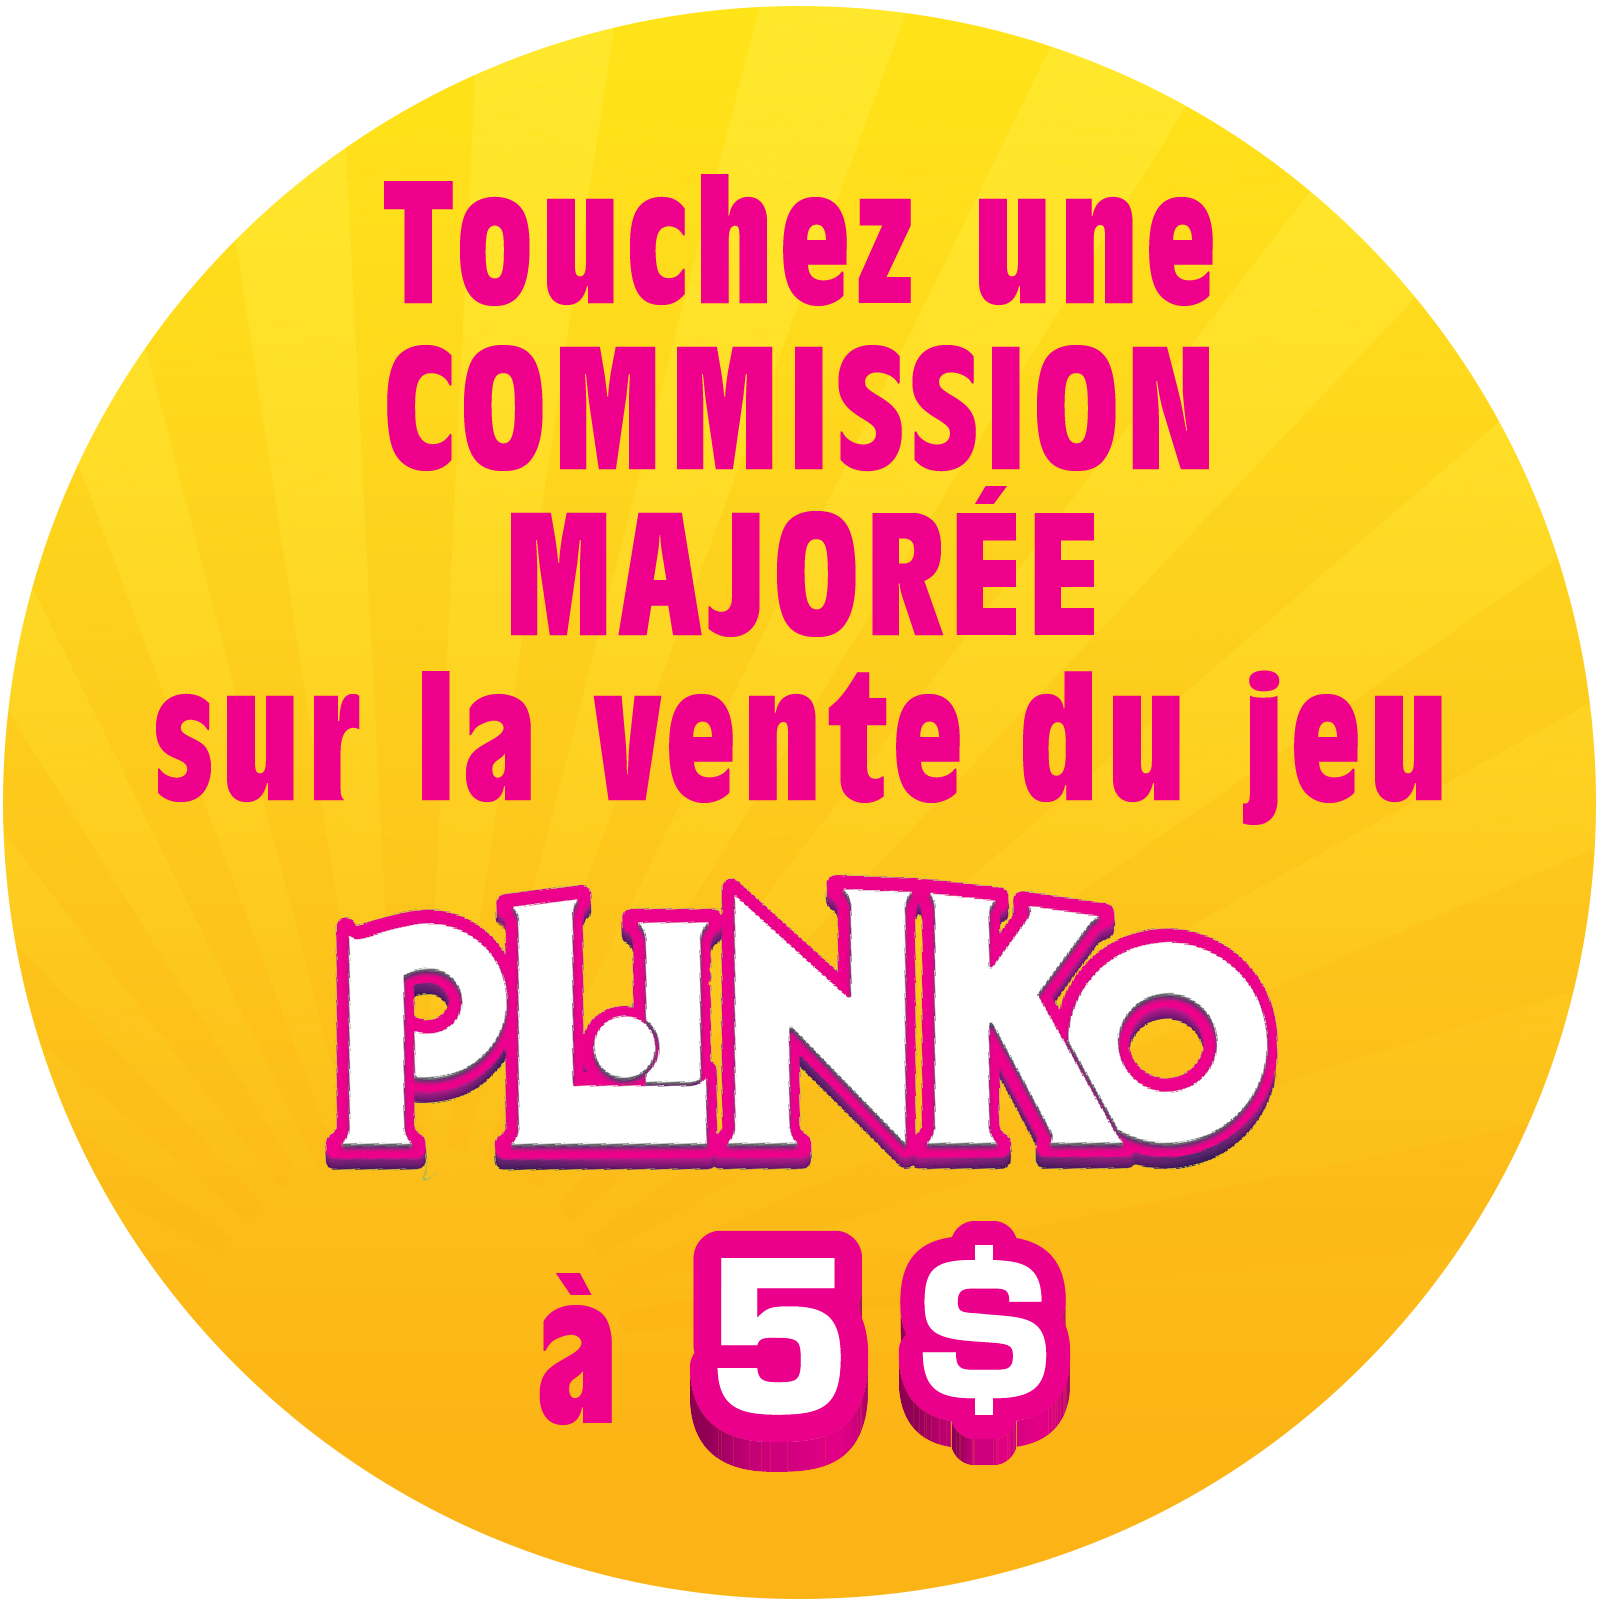 Touchez une commission majorée sur la vente du jeu Plinko 5$